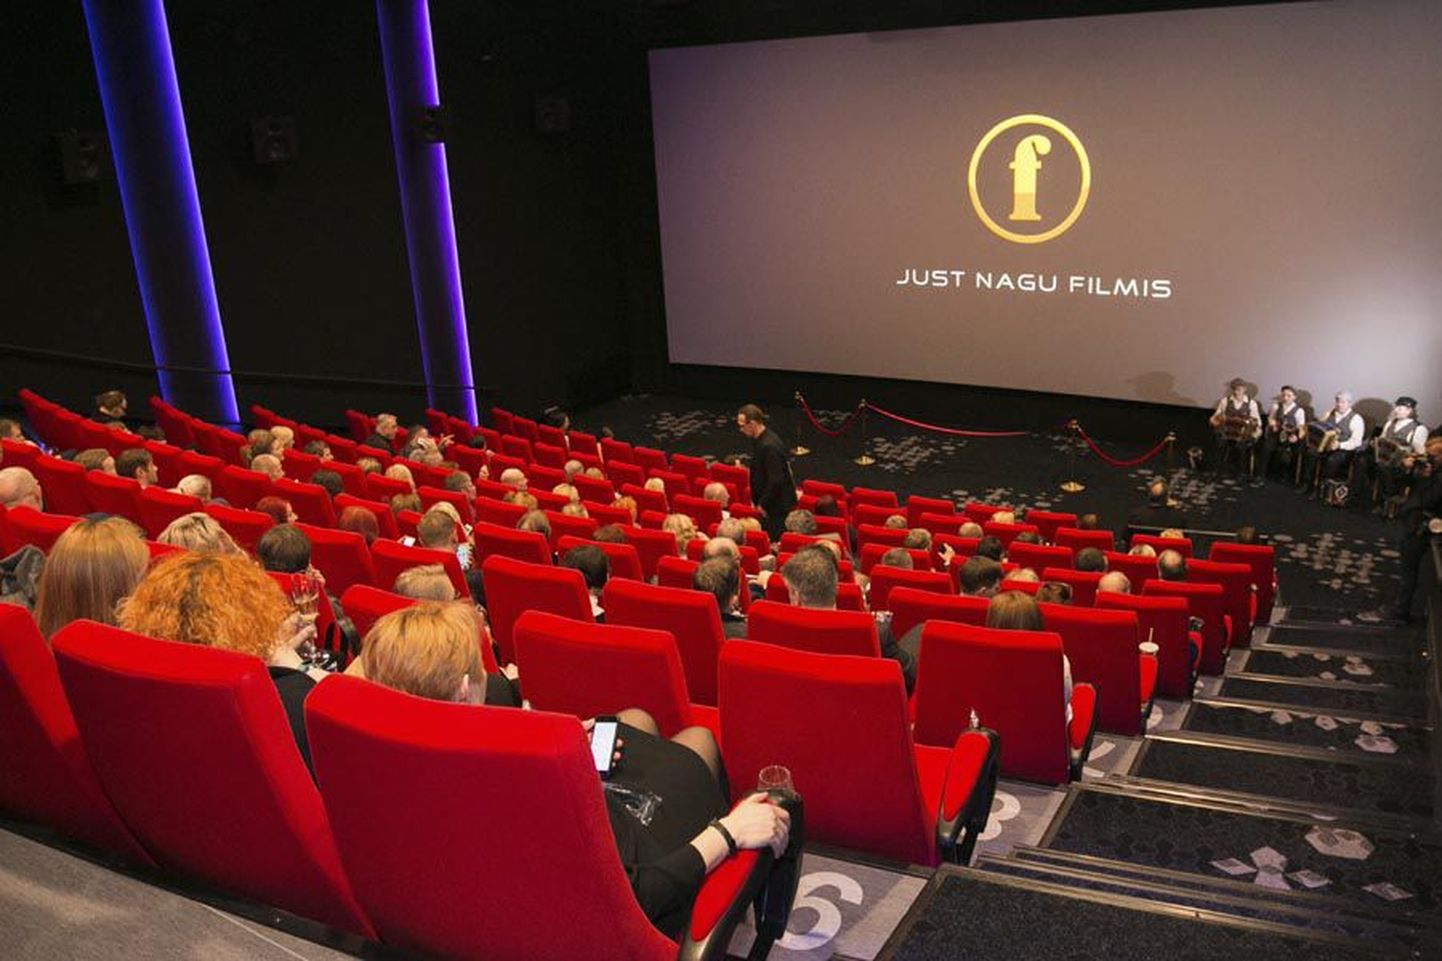 Forum Cinemase Centrumi kino mahutab kahes saalis kokku 255 vaatajat. Selle ehituse koguinvesteering ulatus 1,6 miljoni euroni.